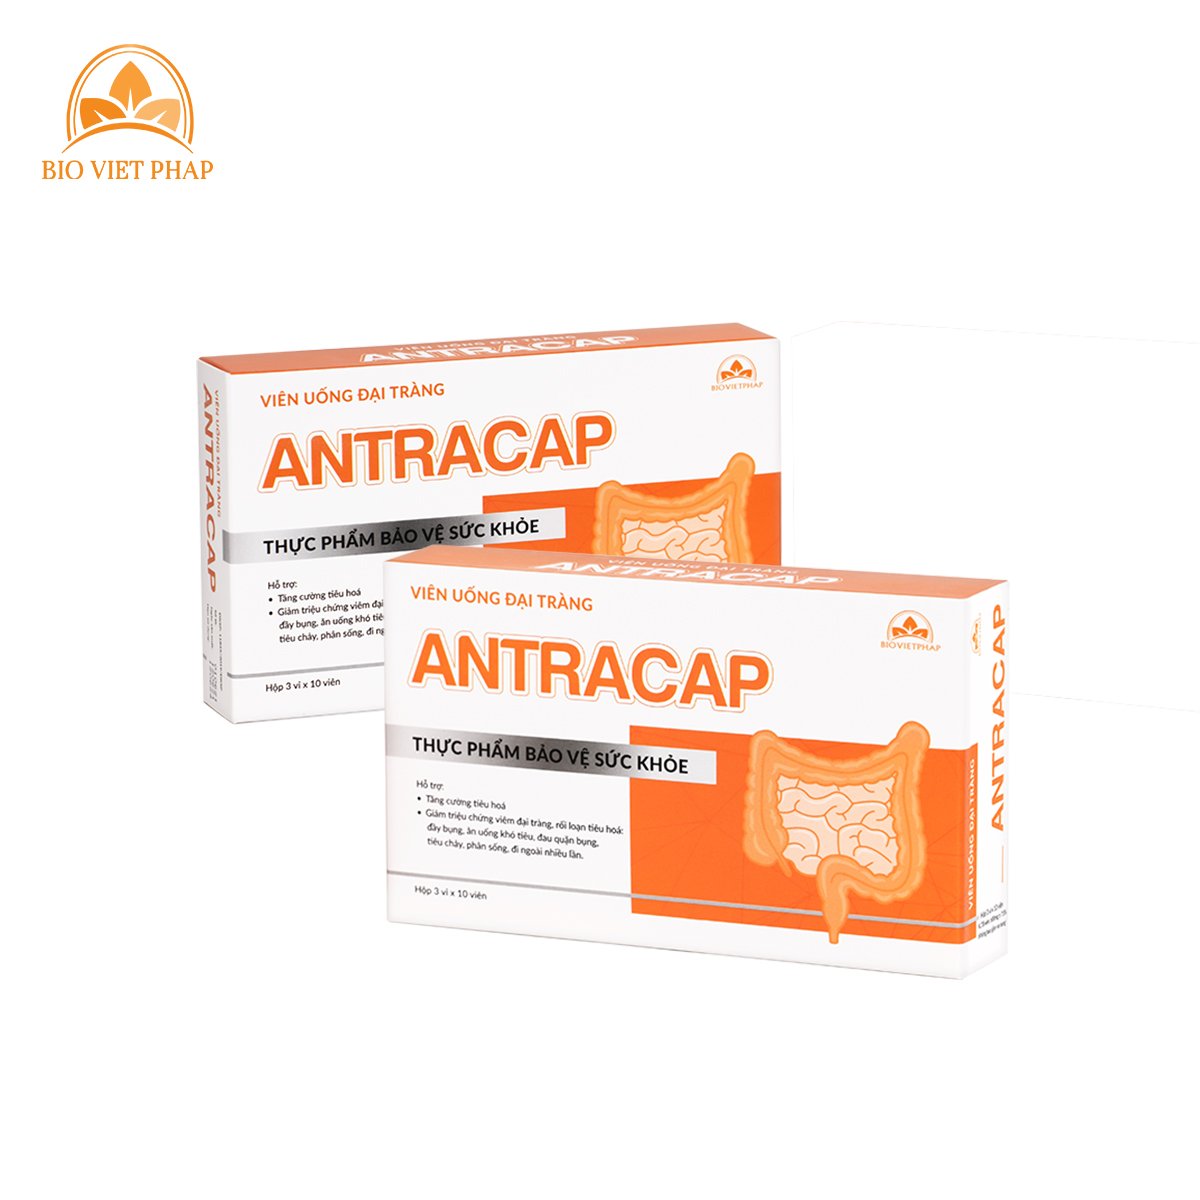 Viên uống đại tràng Antracap giúp hỗ trợ về tiêu hóa